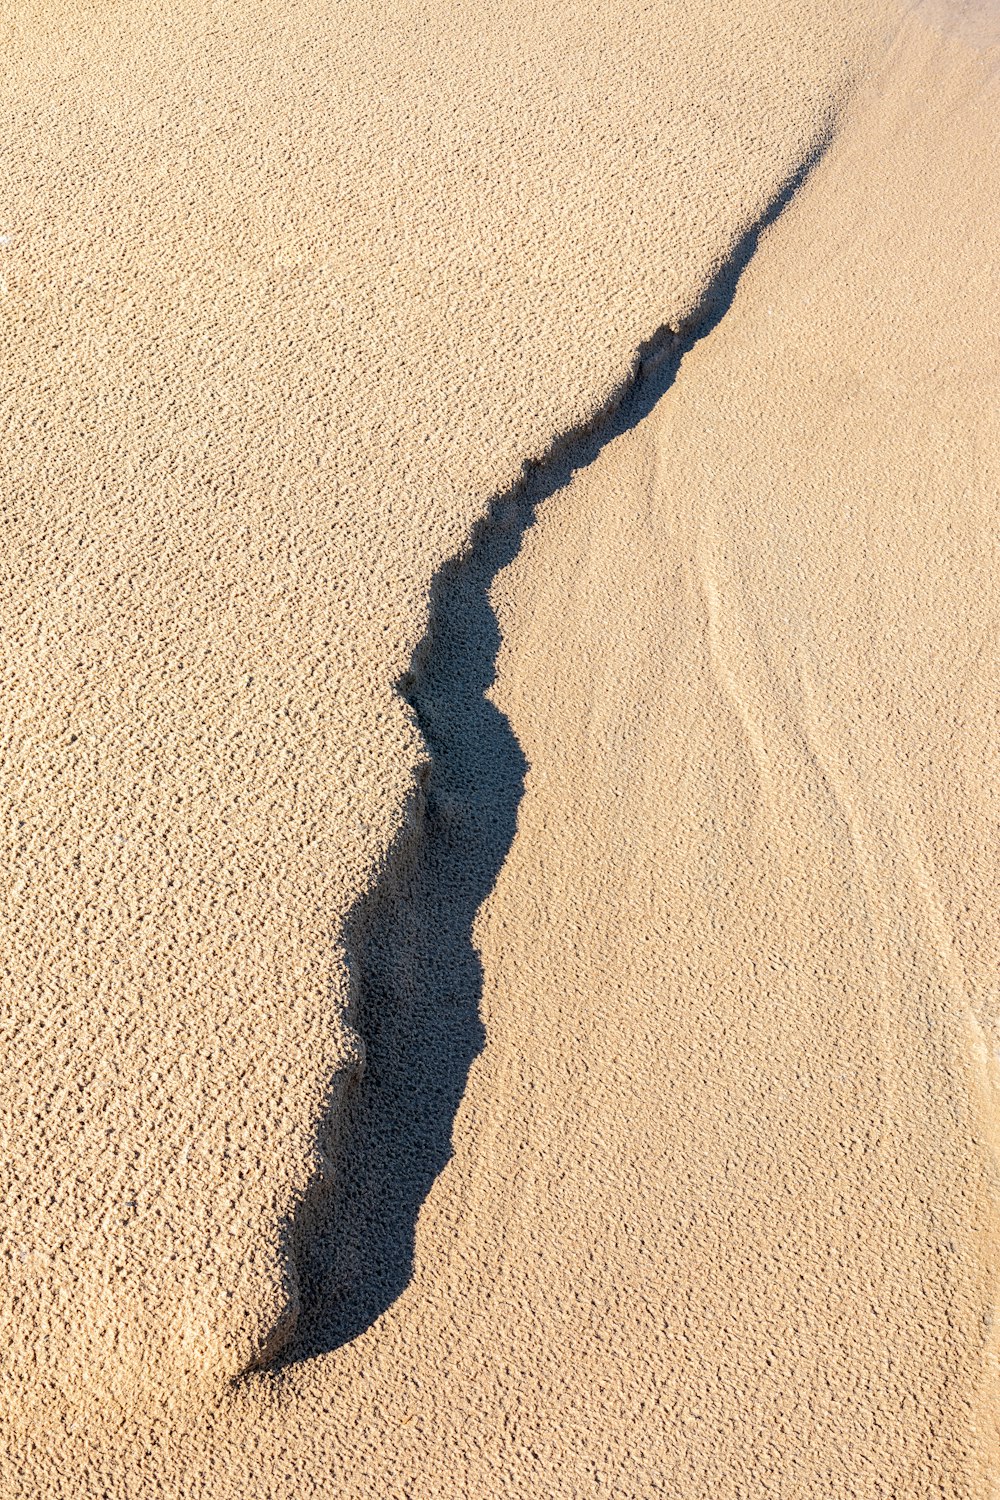 ombra di persona su sabbia marrone